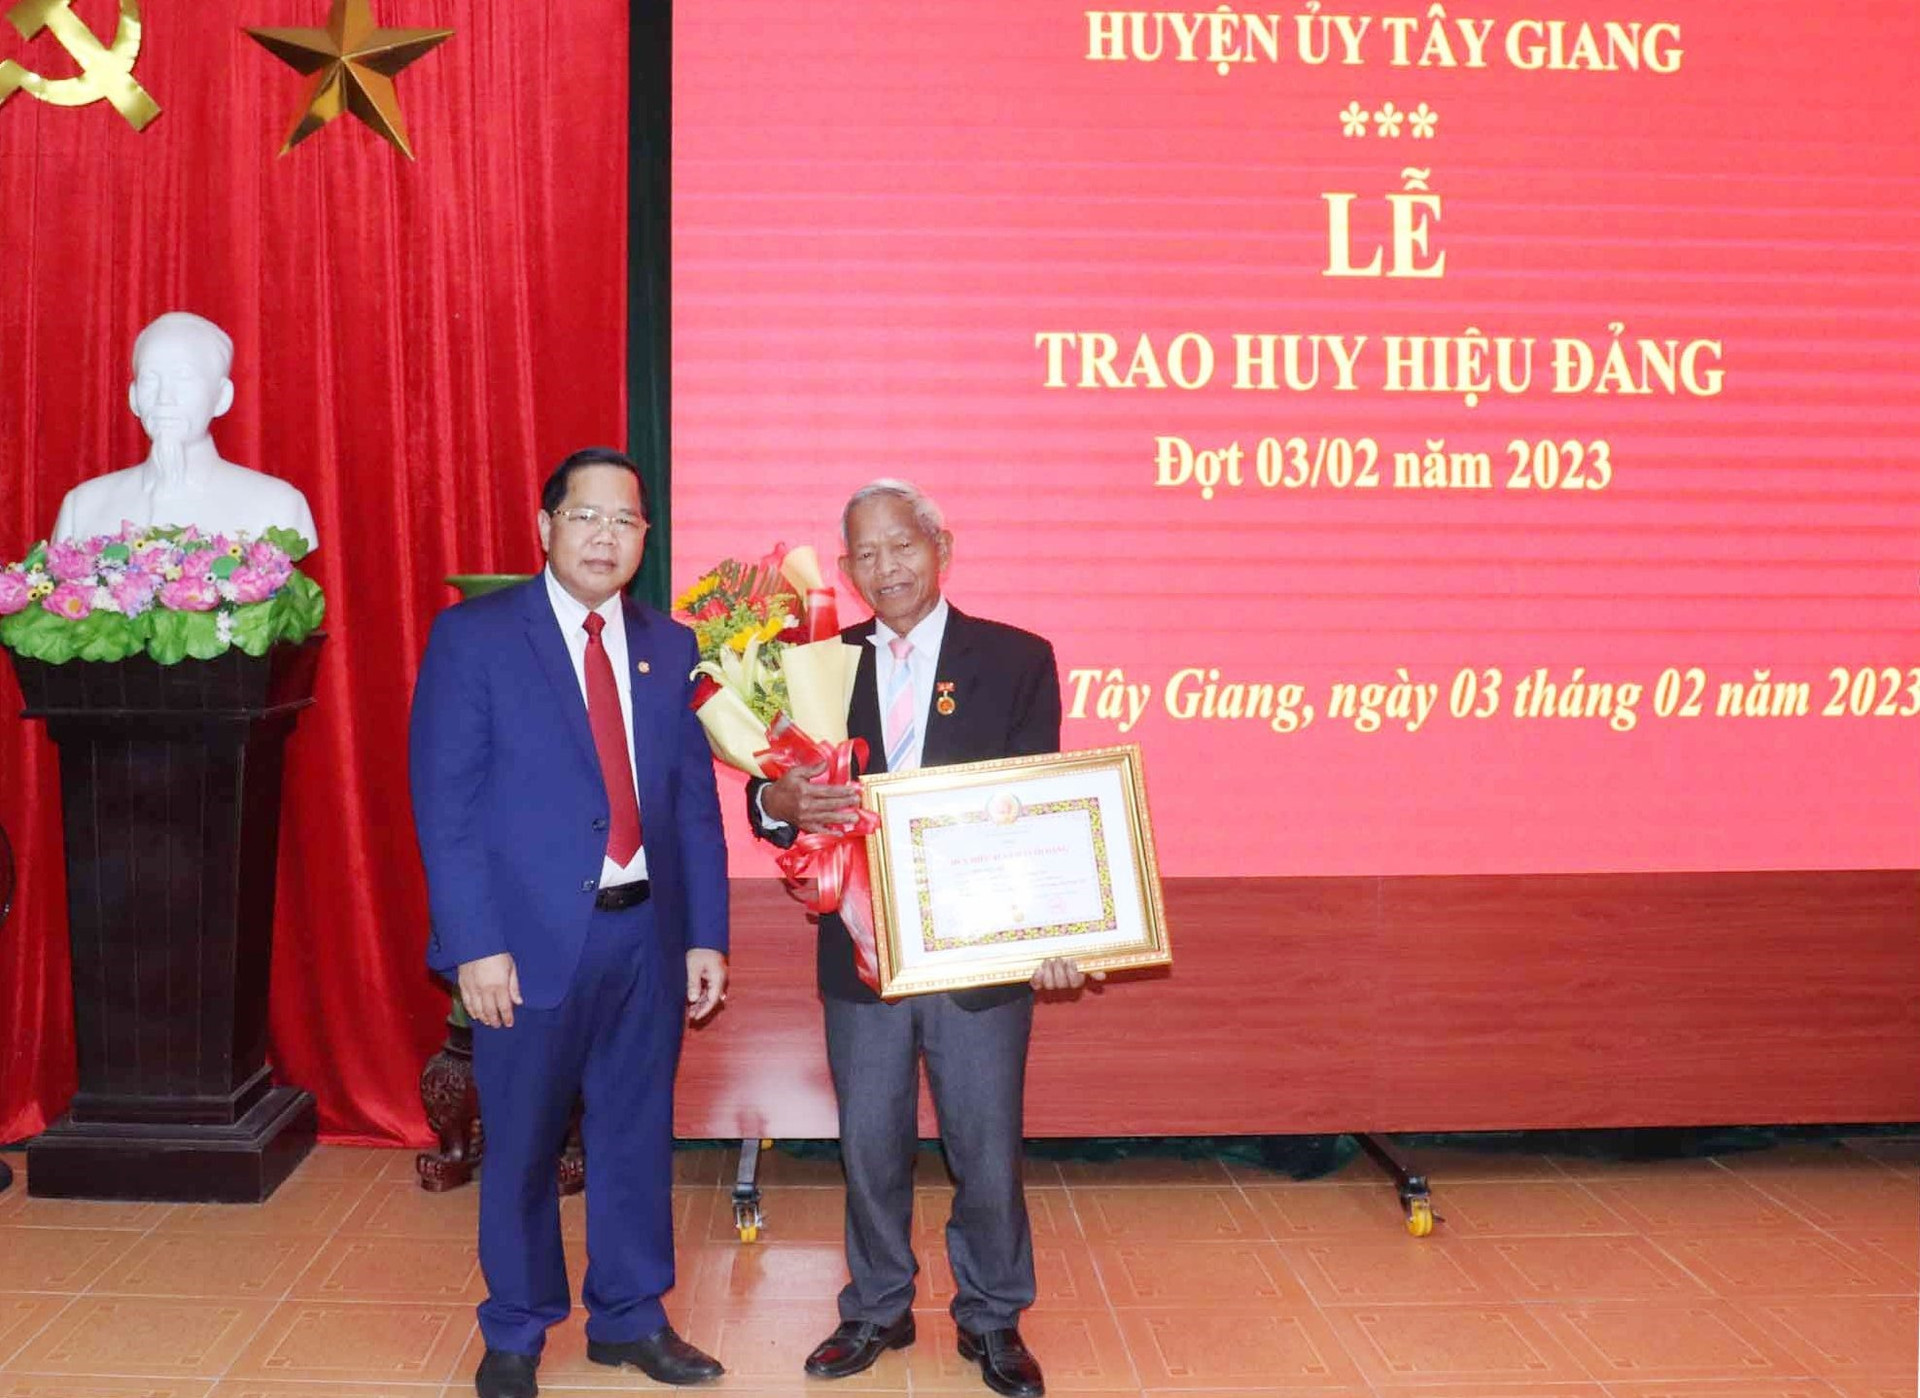 Huyện ủy Tây Giang trao tăng huy hiệu 45 tuổi Đảng cho đồng chí Bhling Hú. Ảnh H.Thúy